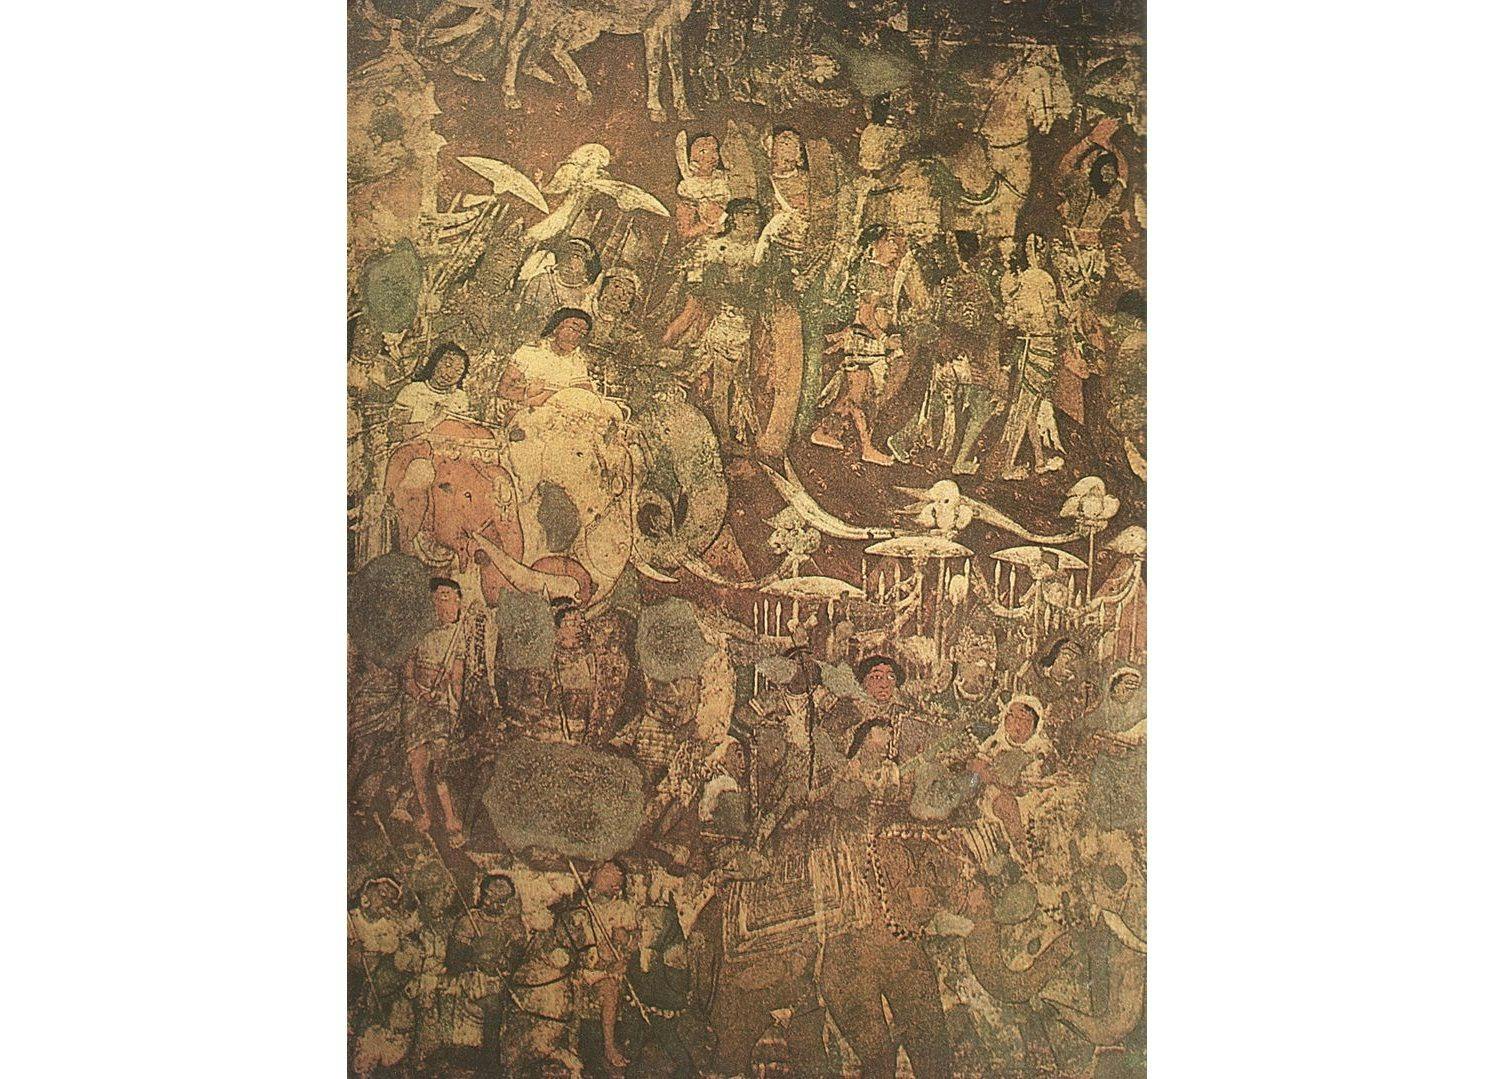 Painting in Ajanta Cave no. 17 depicting Prince Vijaya and the ‘coming of Sinhala’